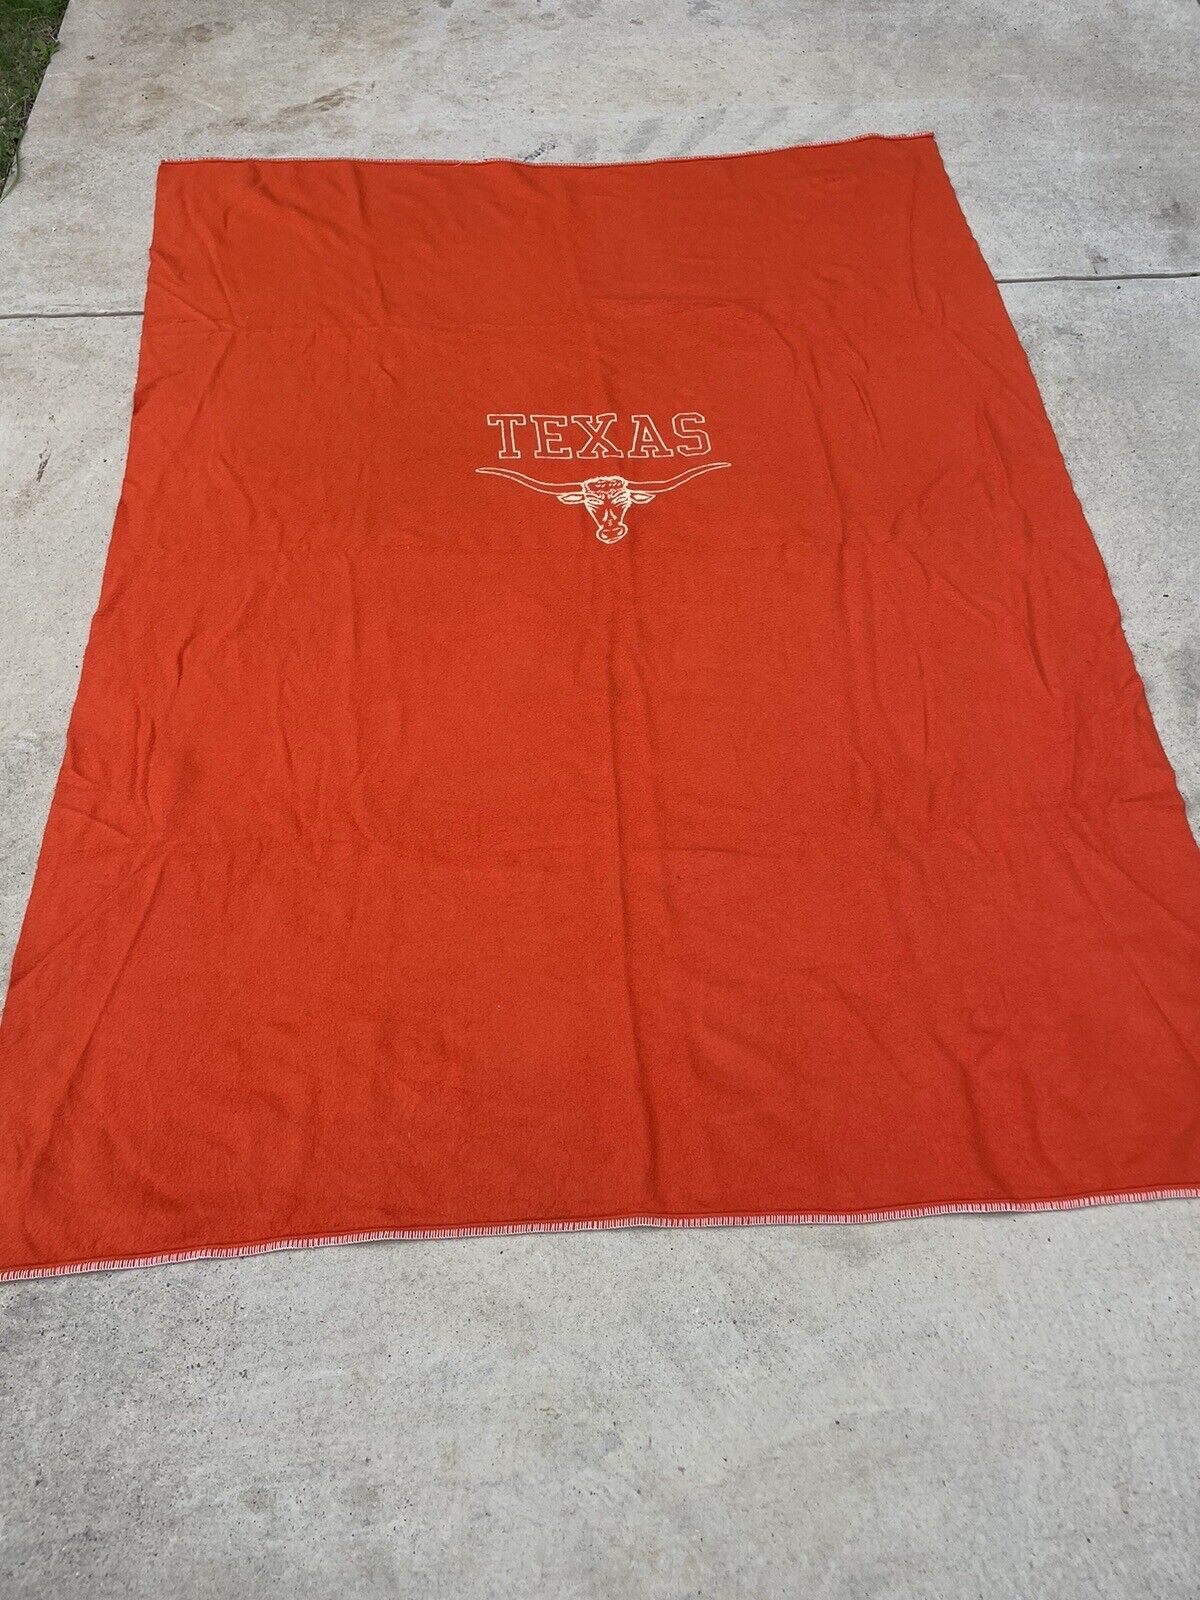 Vintage Texas Longhorn Blanket 63x80